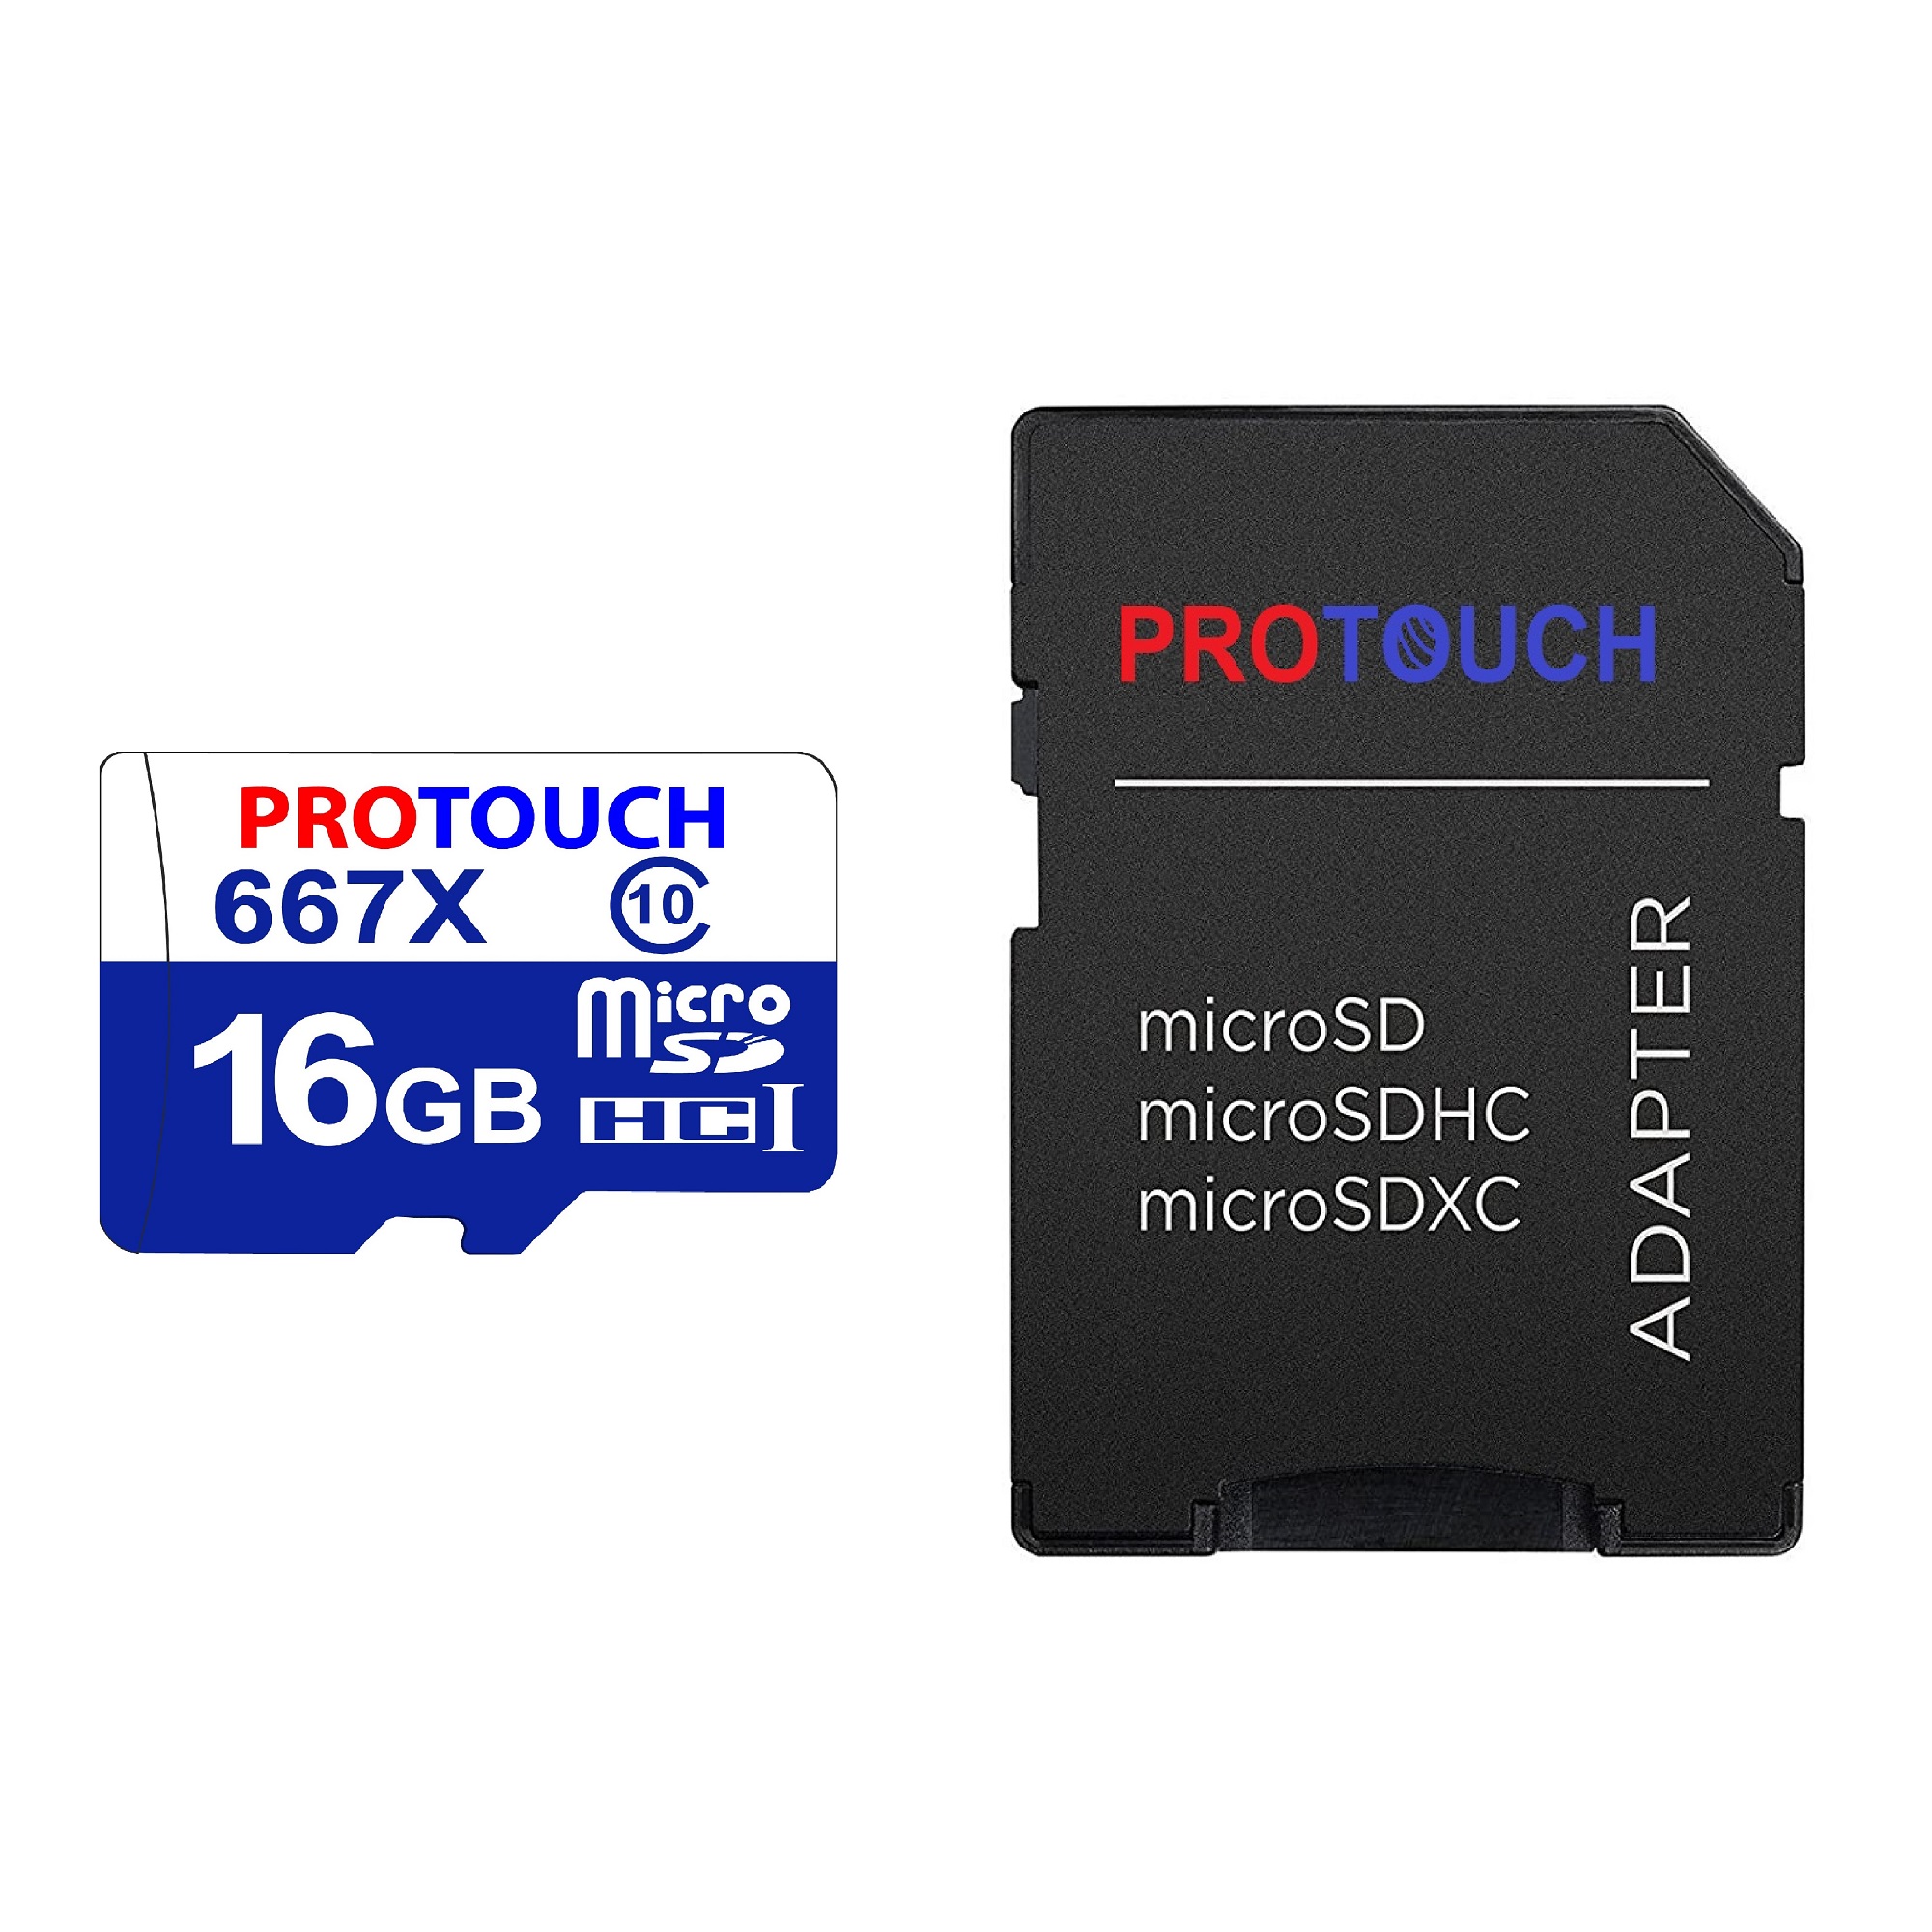 کارت حافظه microSDXC پروتاچ مدل Ultra کلاس 10 استاندارد UHS-1 U3 سرعت 120MBps ظرفیت 16 گیگابایت به همراه آداپتور SD